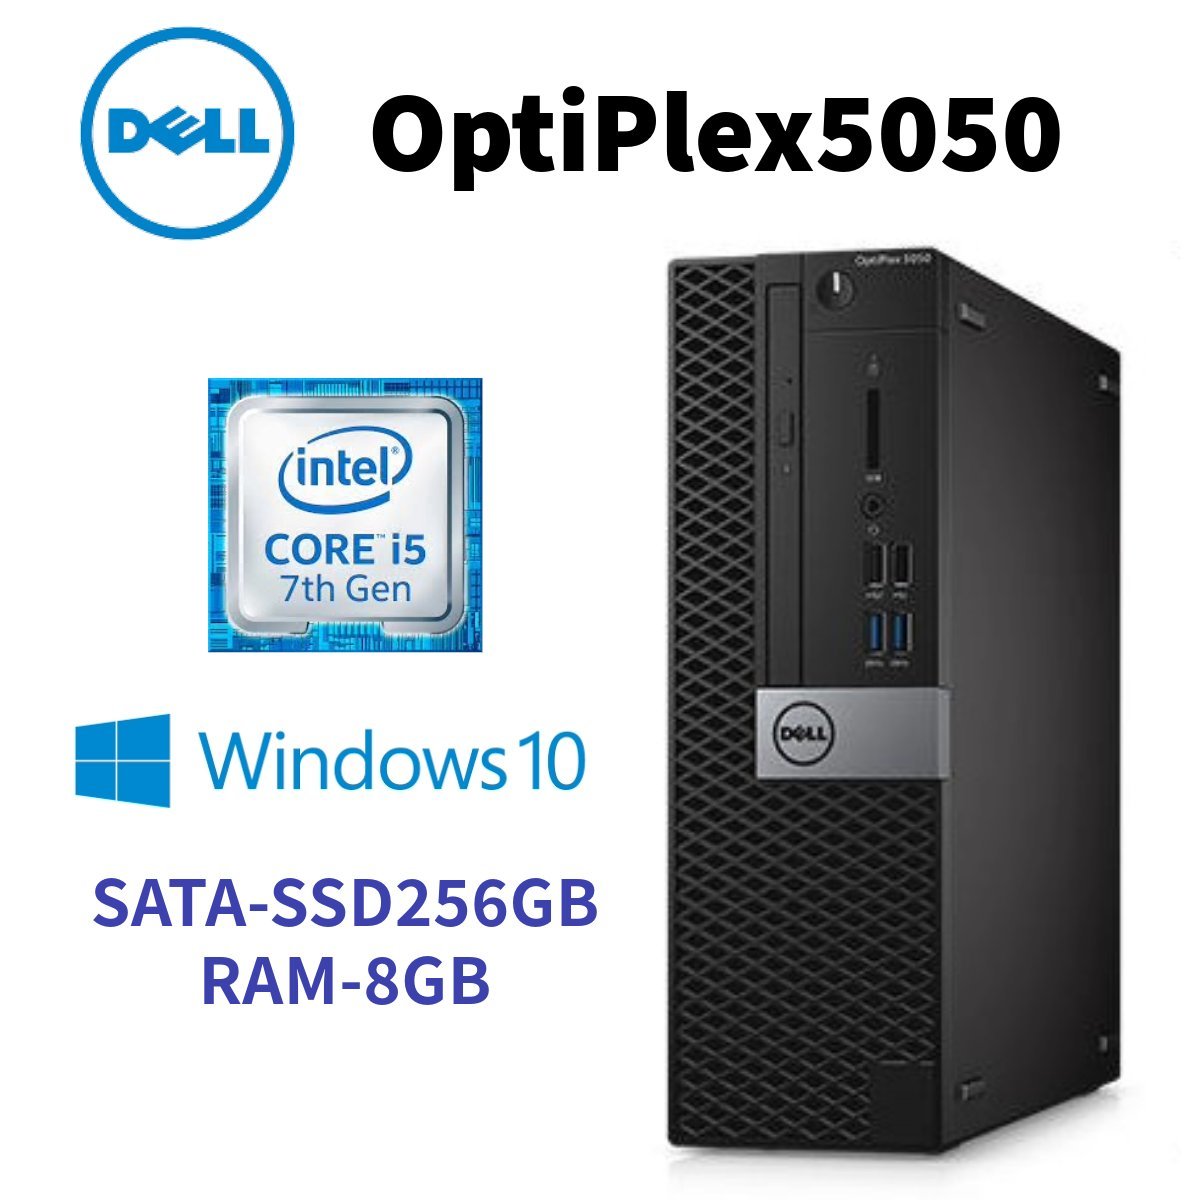 【DELL OptiPlex 5050】 デスクトップ / Win10Pro / Corei5-7500 / 新品SATA-SSD256GB / 8GB